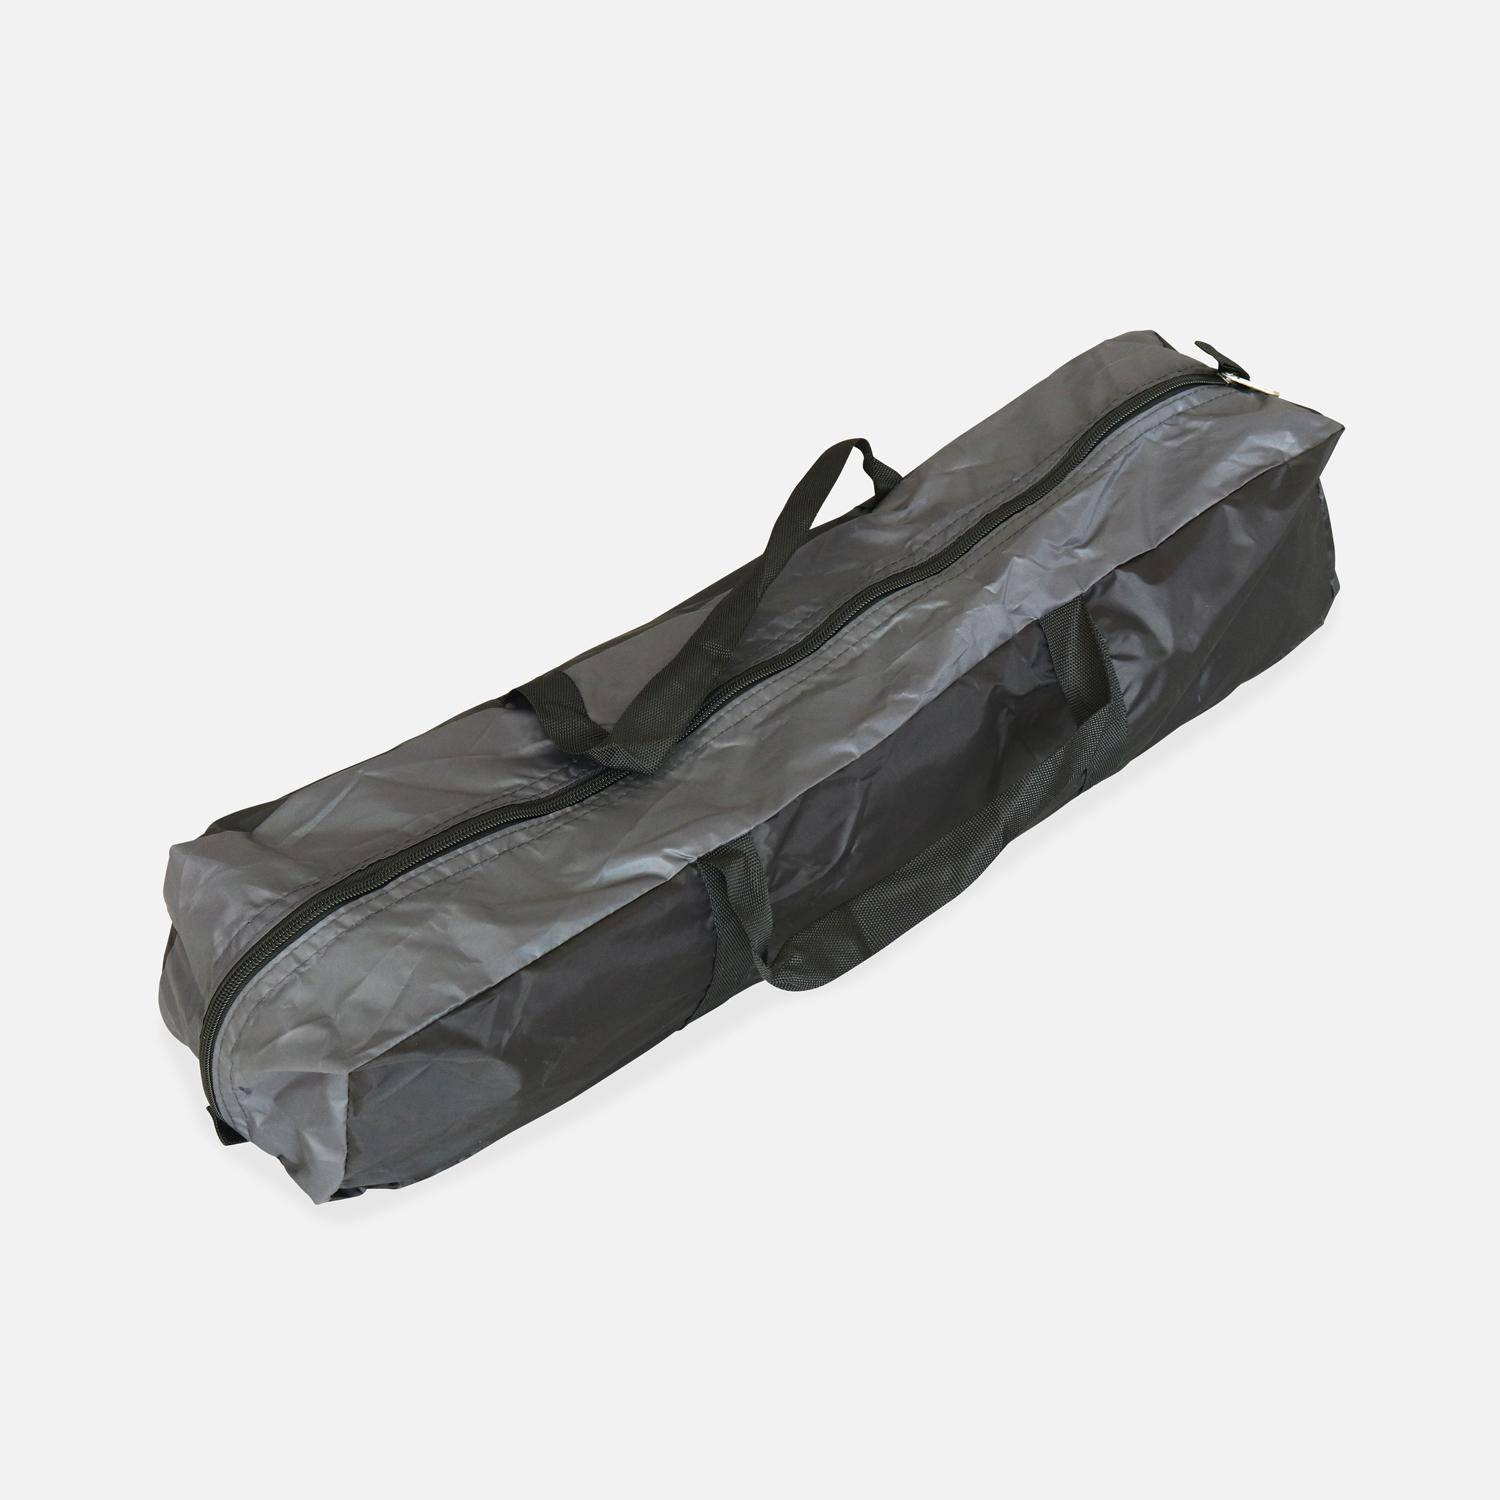 Trampoline 305cm gris avec pack d'accessoires + Tente de camping avec sac de transport,sweeek,Photo5